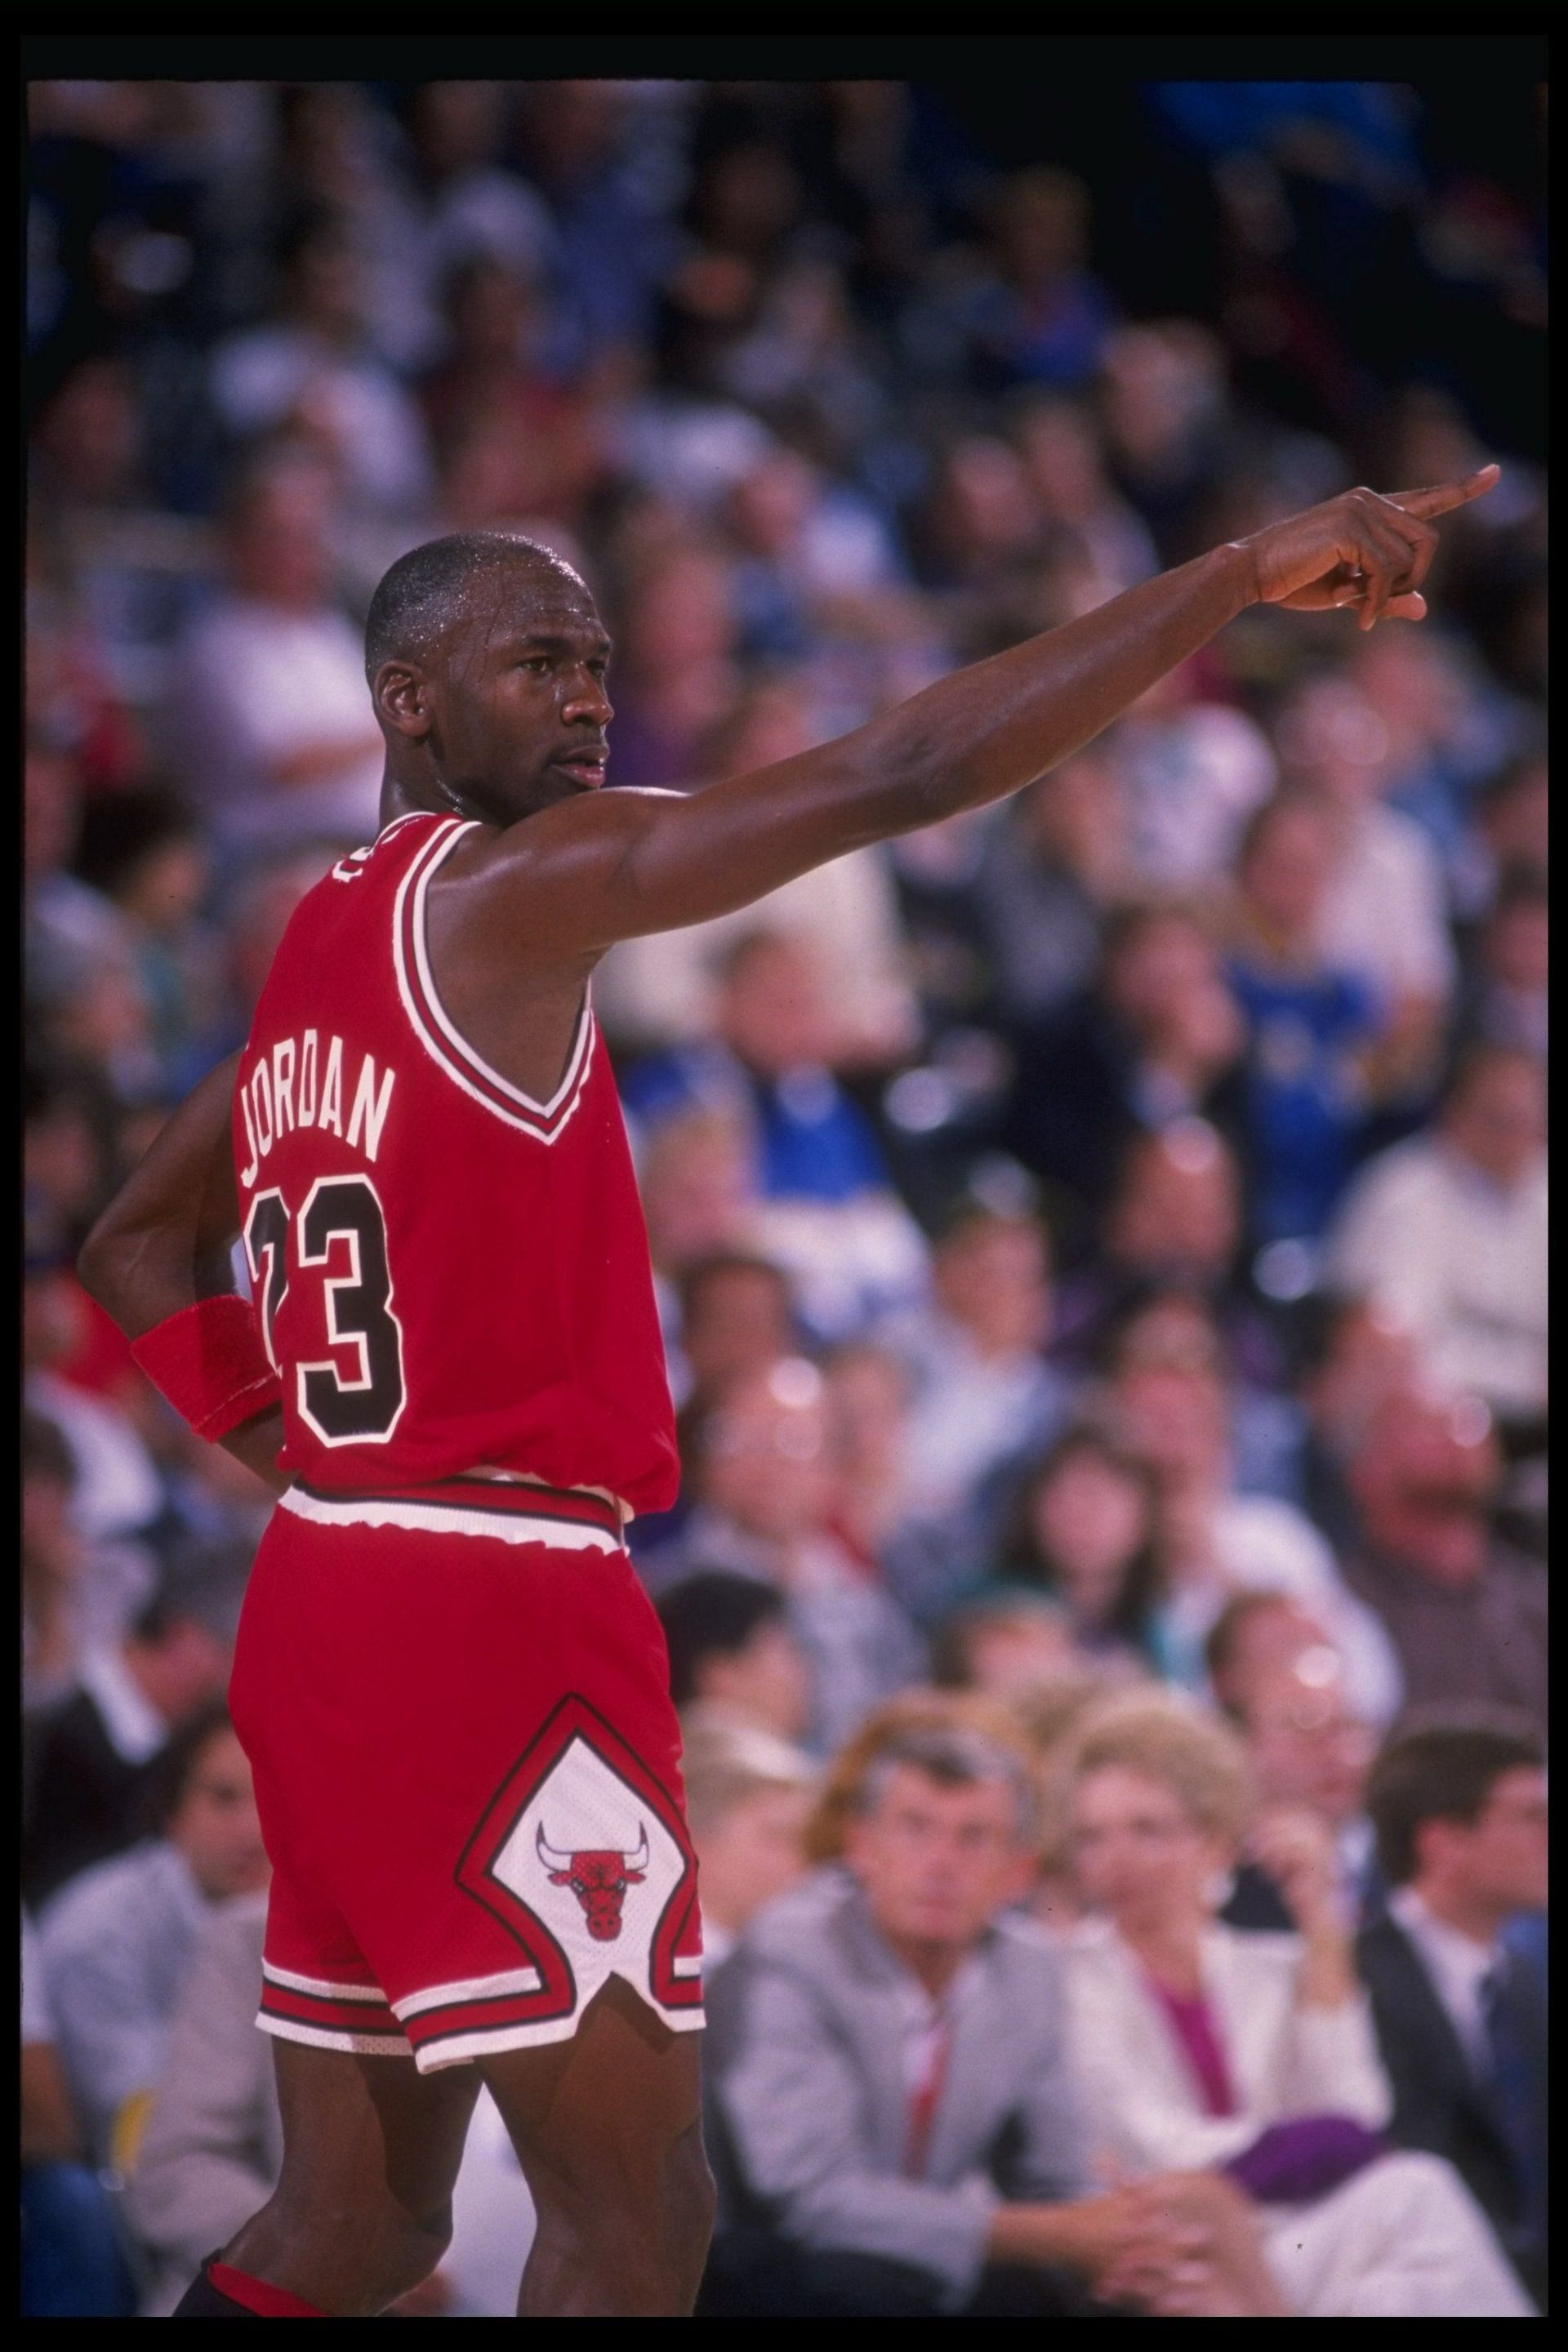 Michael Jordan in his third season in the NBA